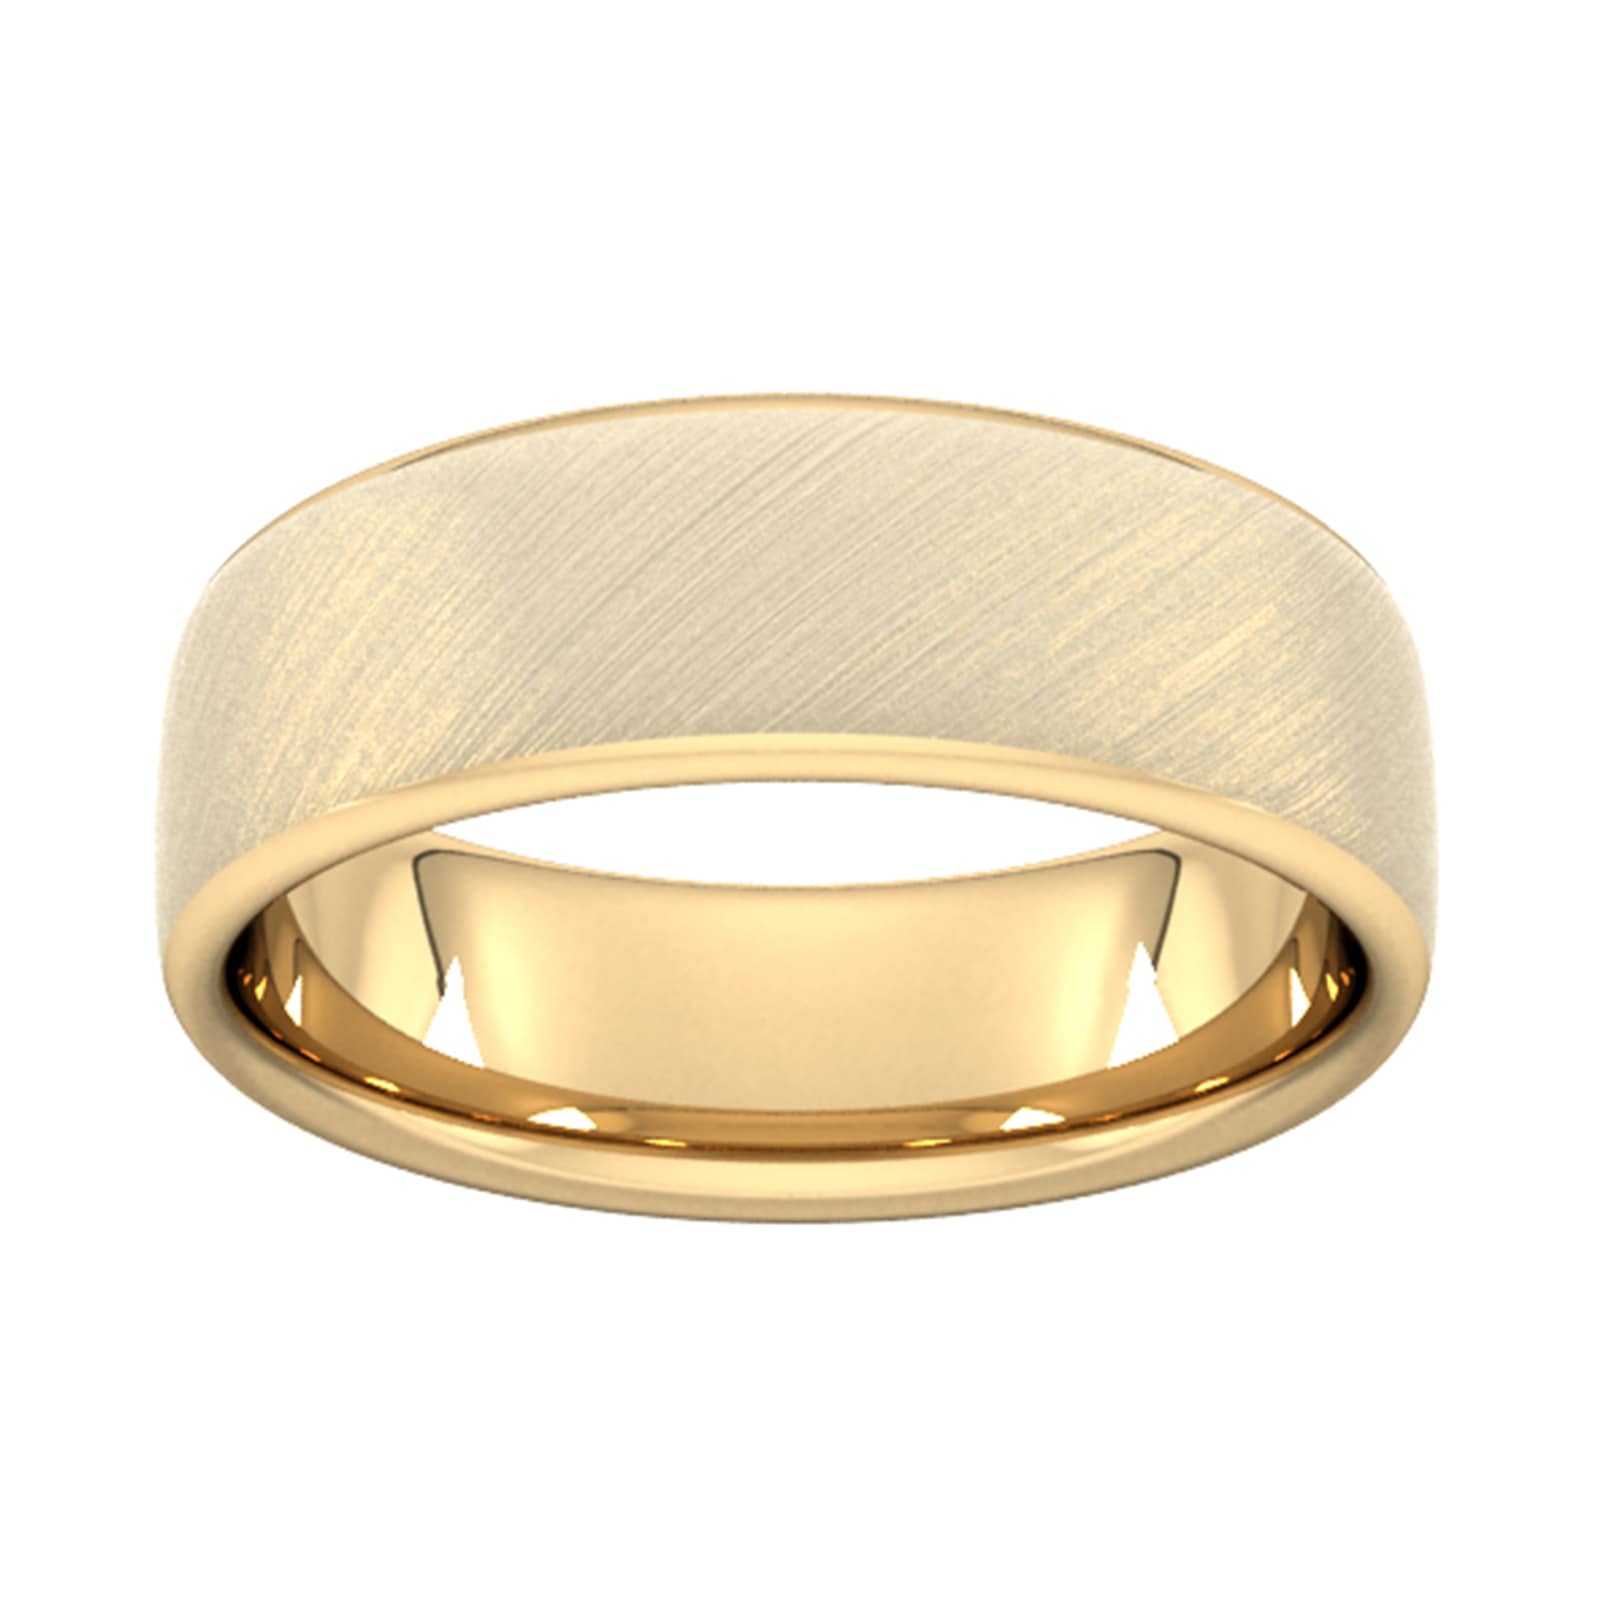 7mm Flat Court Heavy Diagonal Matt Finish Wedding Ring In 18 Carat Yellow Gold - Ring Size X